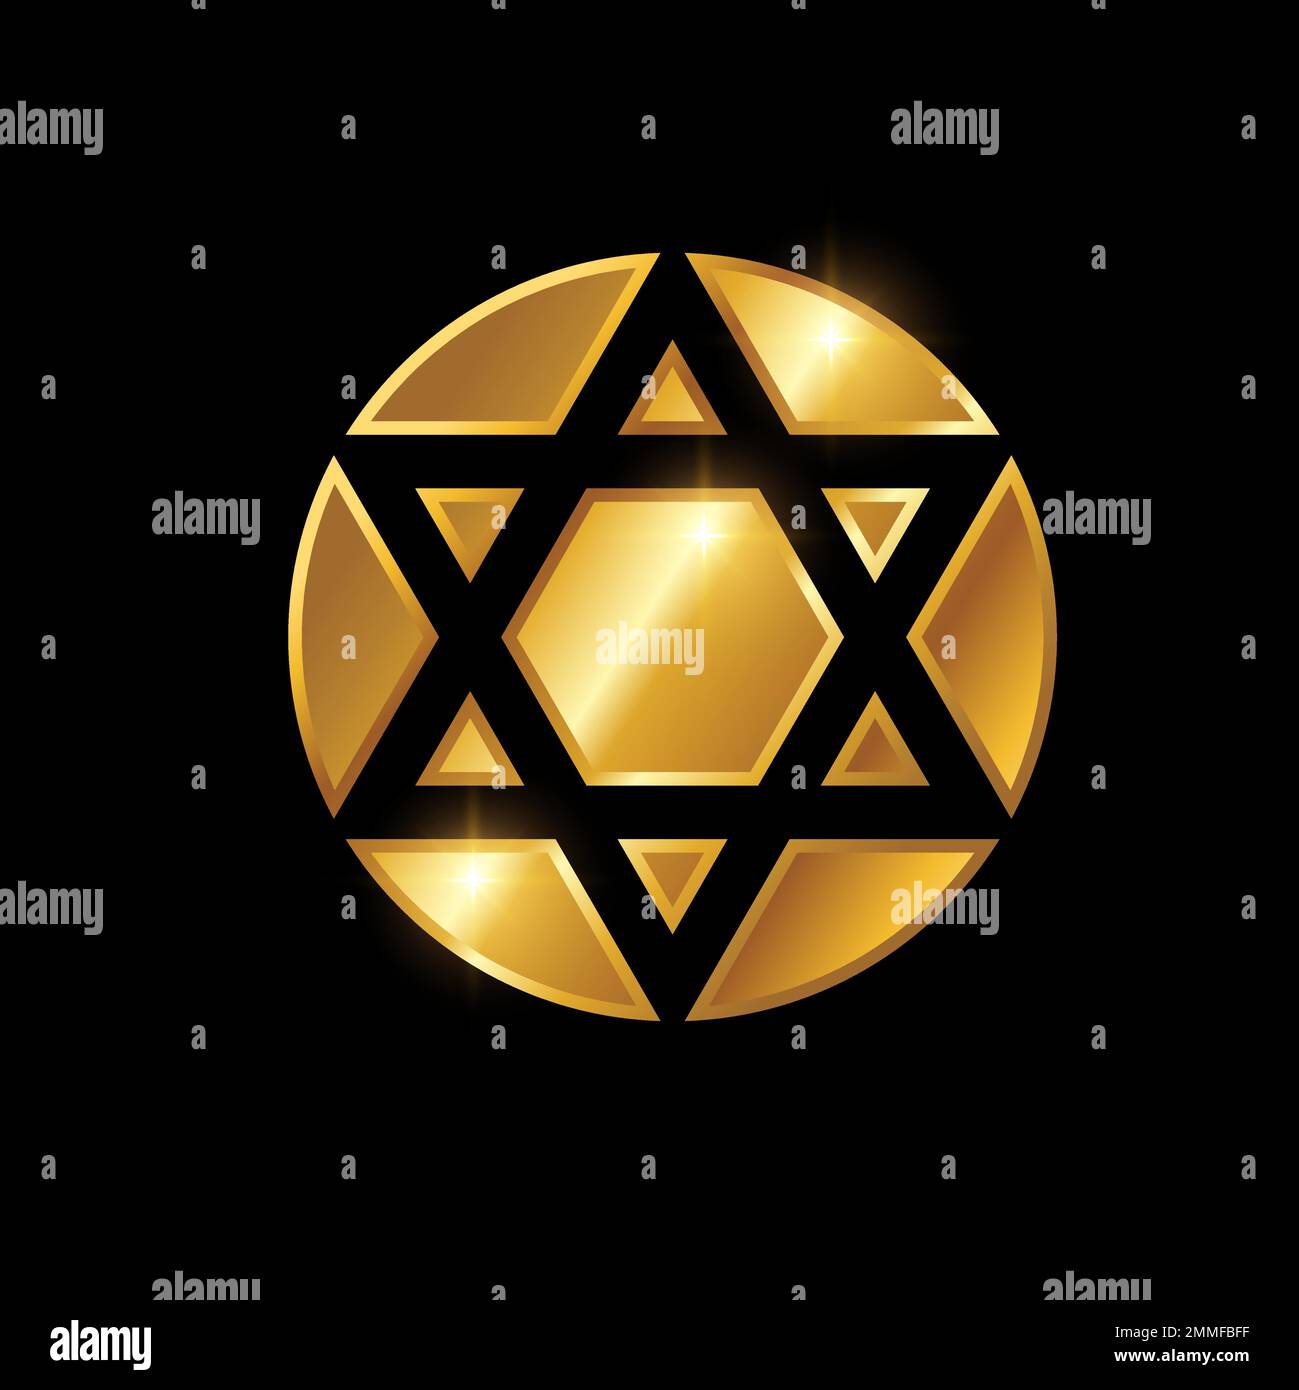 Illustrazione vettoriale del segno della stella del triangolo dell'Hexagram dorato, fondo nero con effetto lucentezza dell'oro Illustrazione Vettoriale